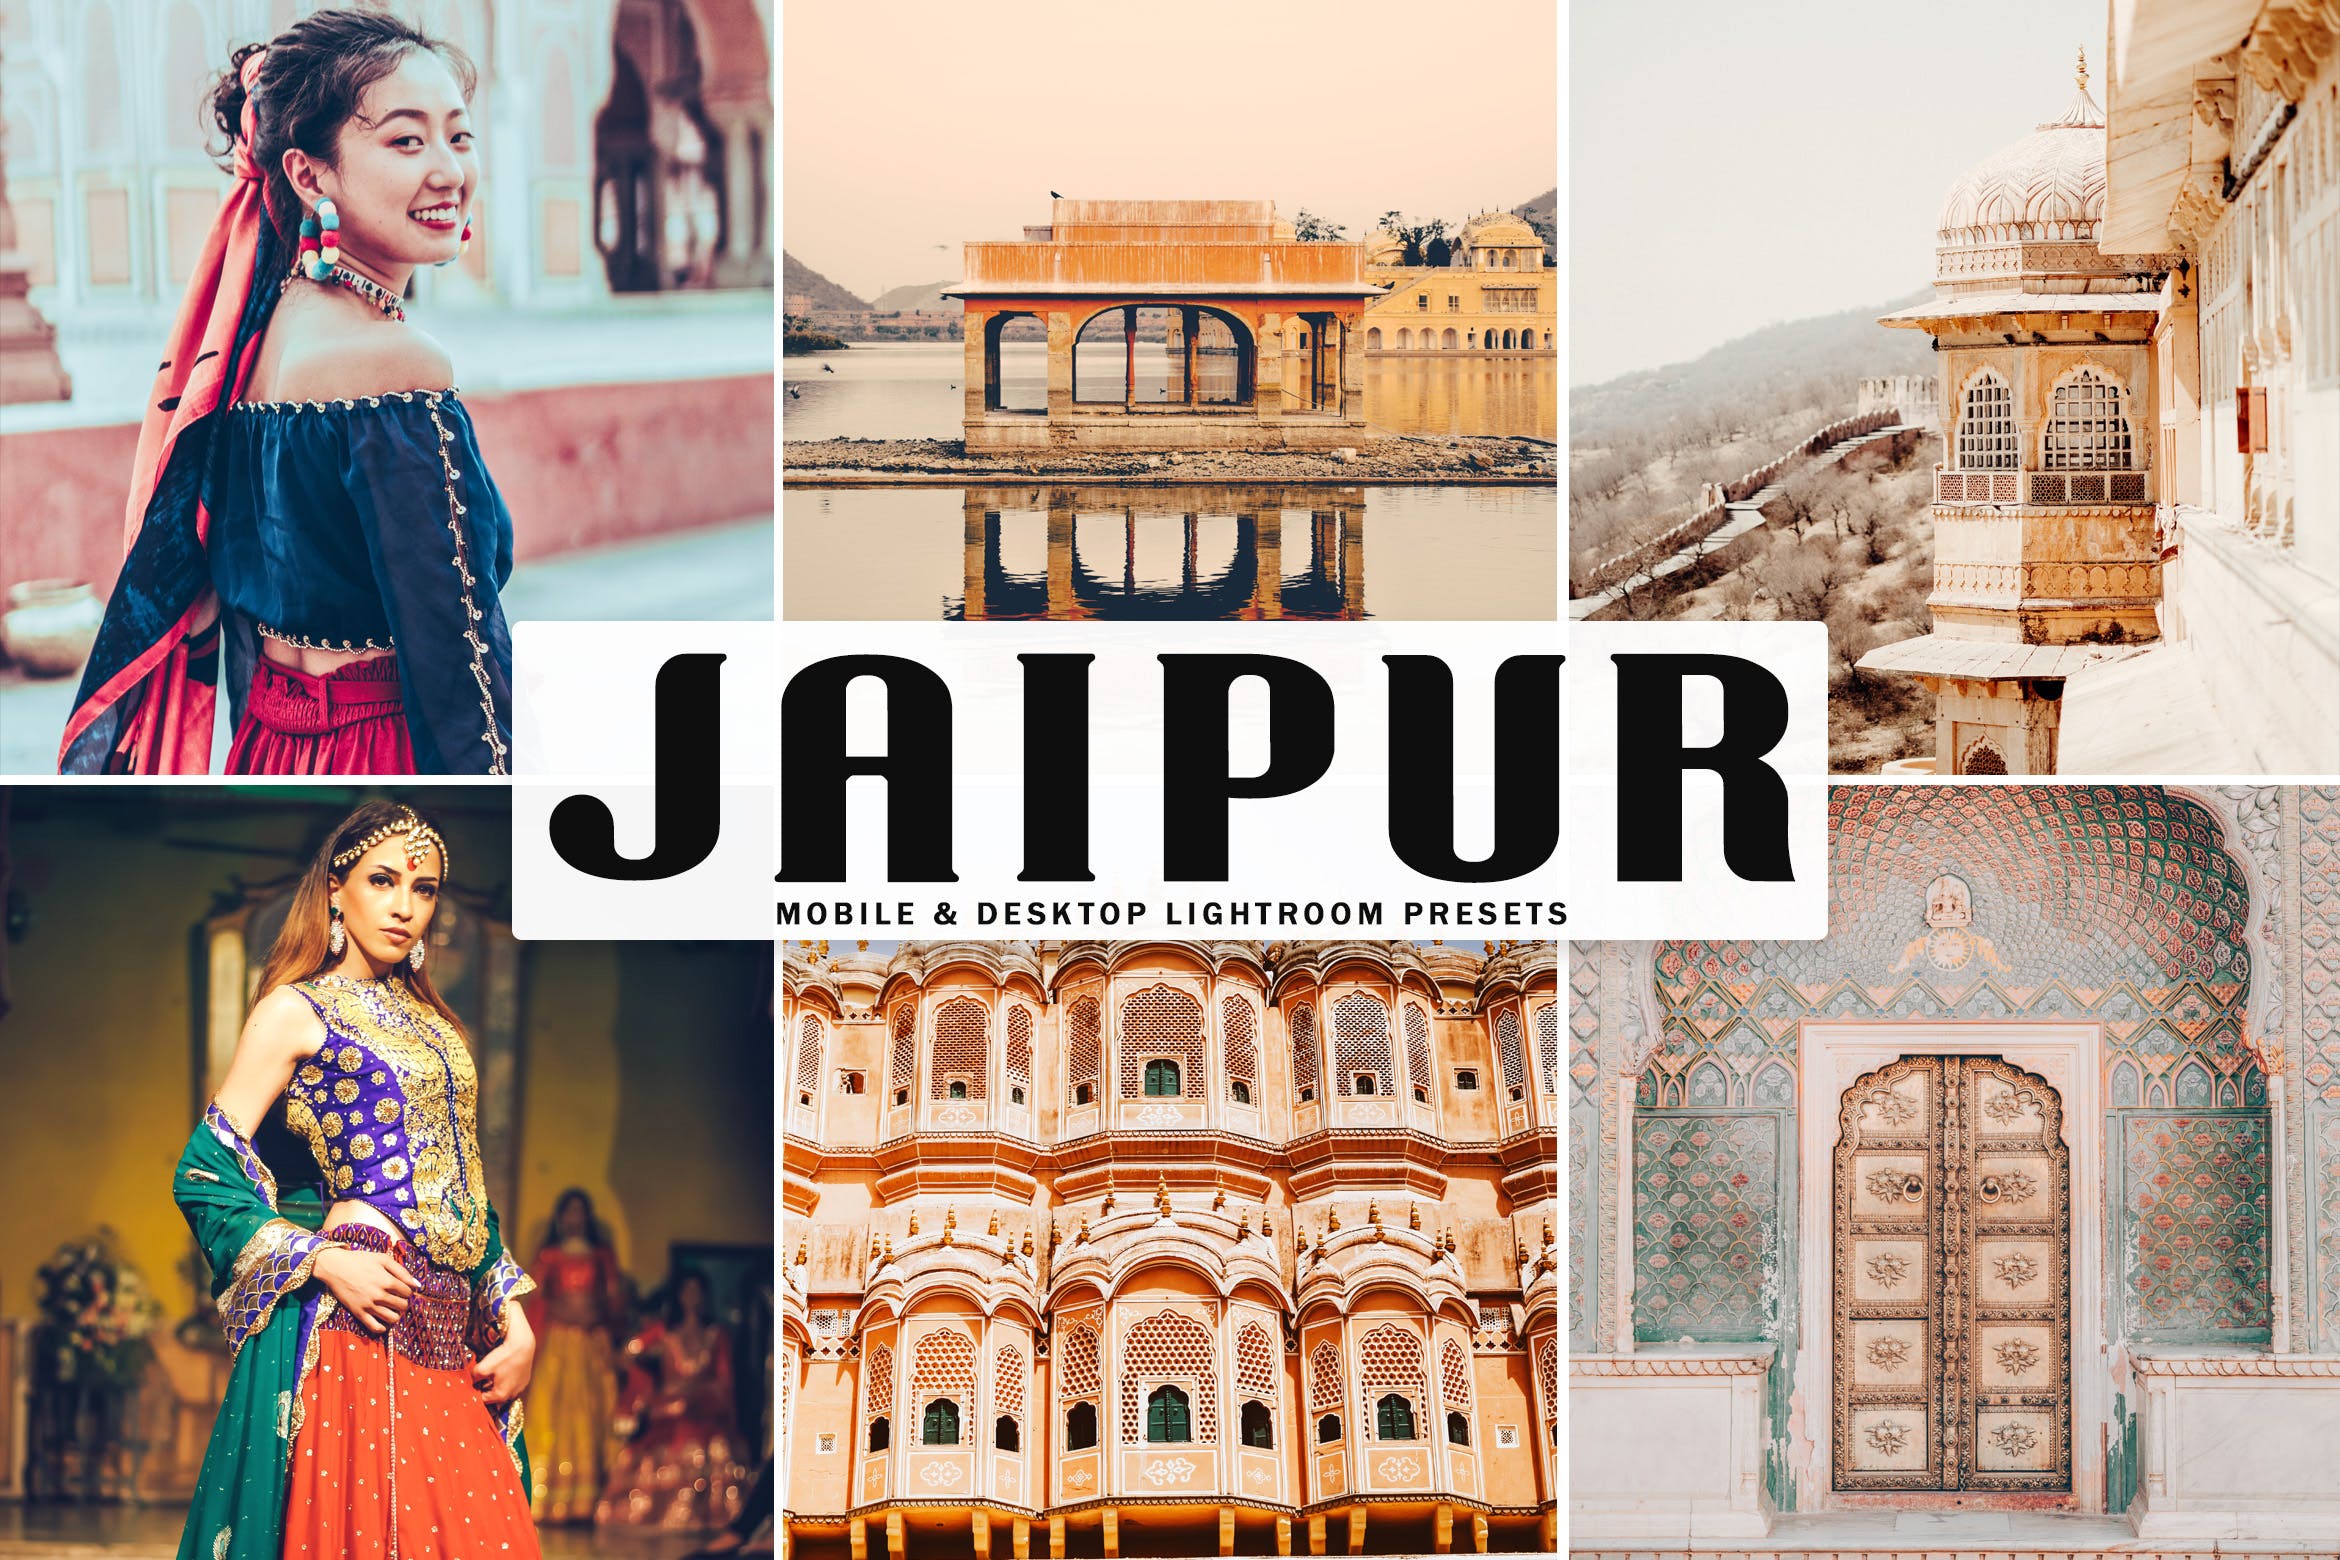 斋浦尔特色风景旅行拍摄后期调色Lightroom预设 Jaipur Mobile & Desktop Lightroom Presets插图